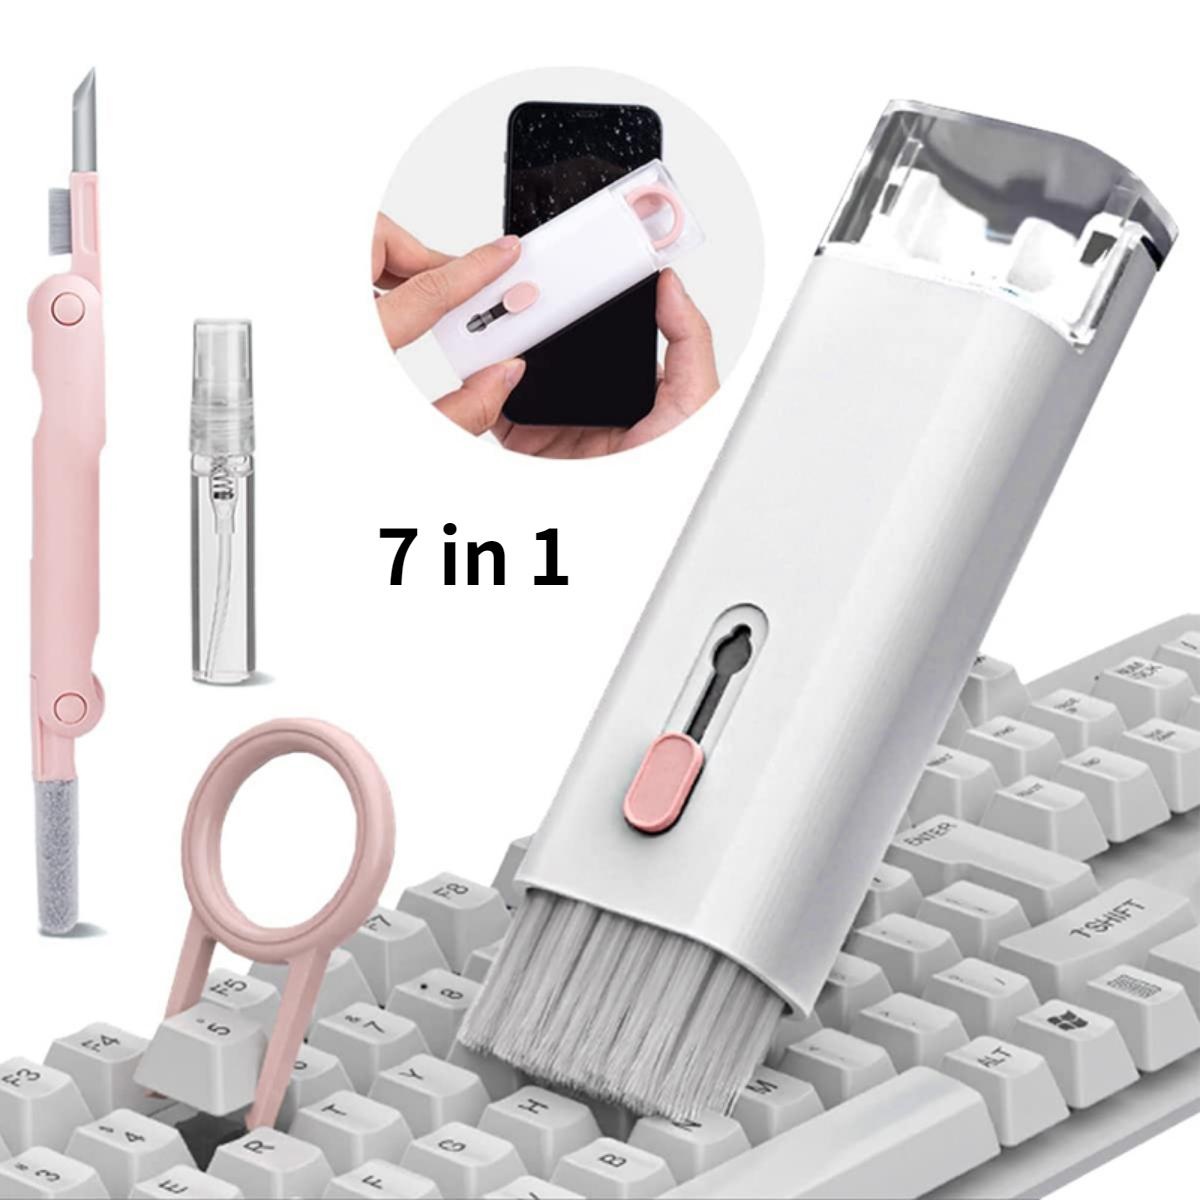  Kit de limpieza 8 en 1 con spray de actualización  multifuncional electrónica Kit de limpieza de teclado, Airpod Pro limpiador  de lápiz de limpieza Herramientas para auriculares/MacBook/Auriculares/iPad/ iPhone (con líquido) : Electrónica